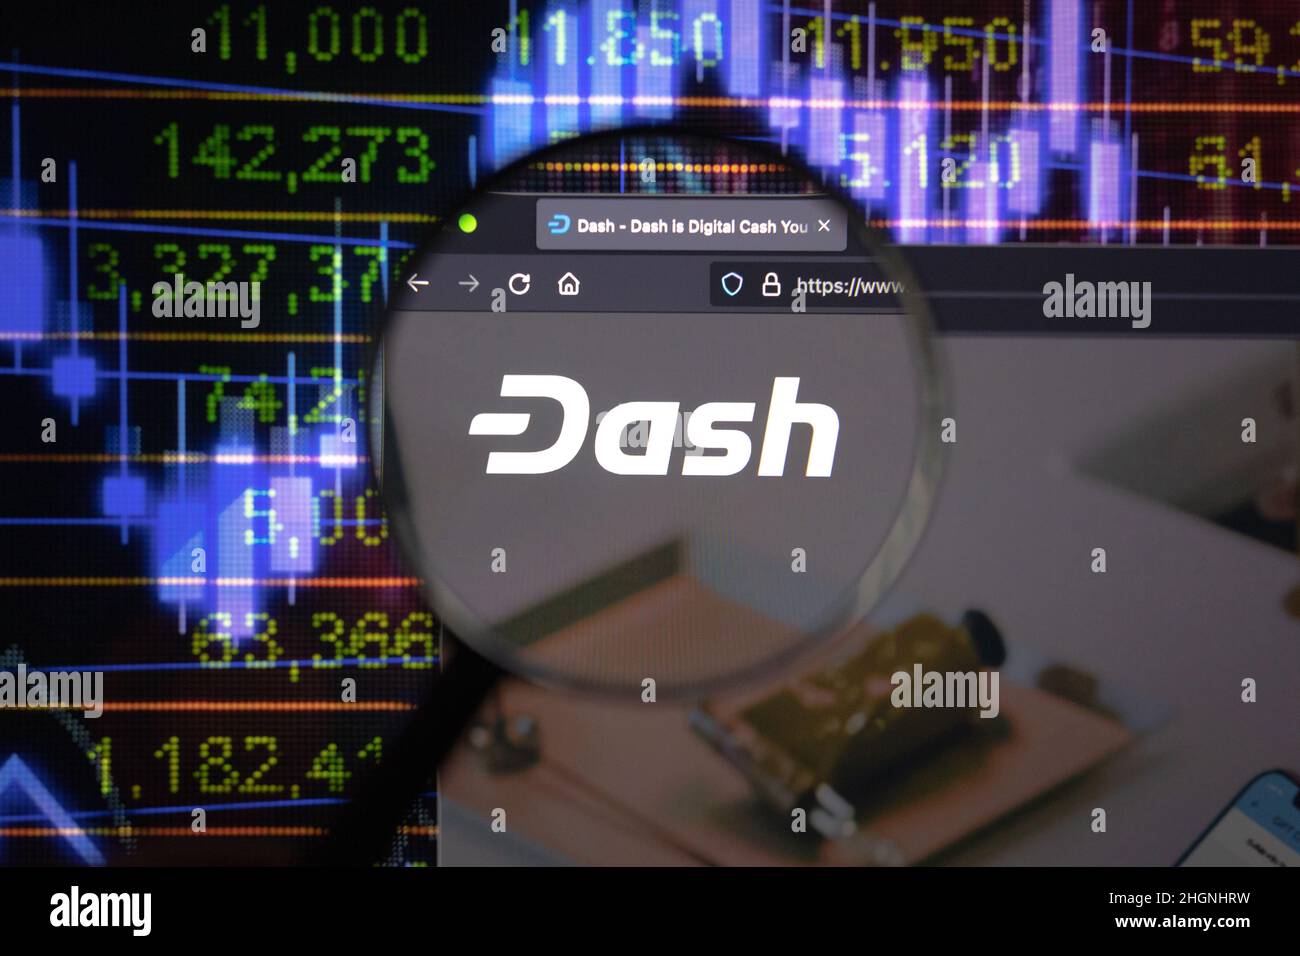 Dash crypto company logo on a website, seen on a computer screen through a magnifying glass. Stock Photo